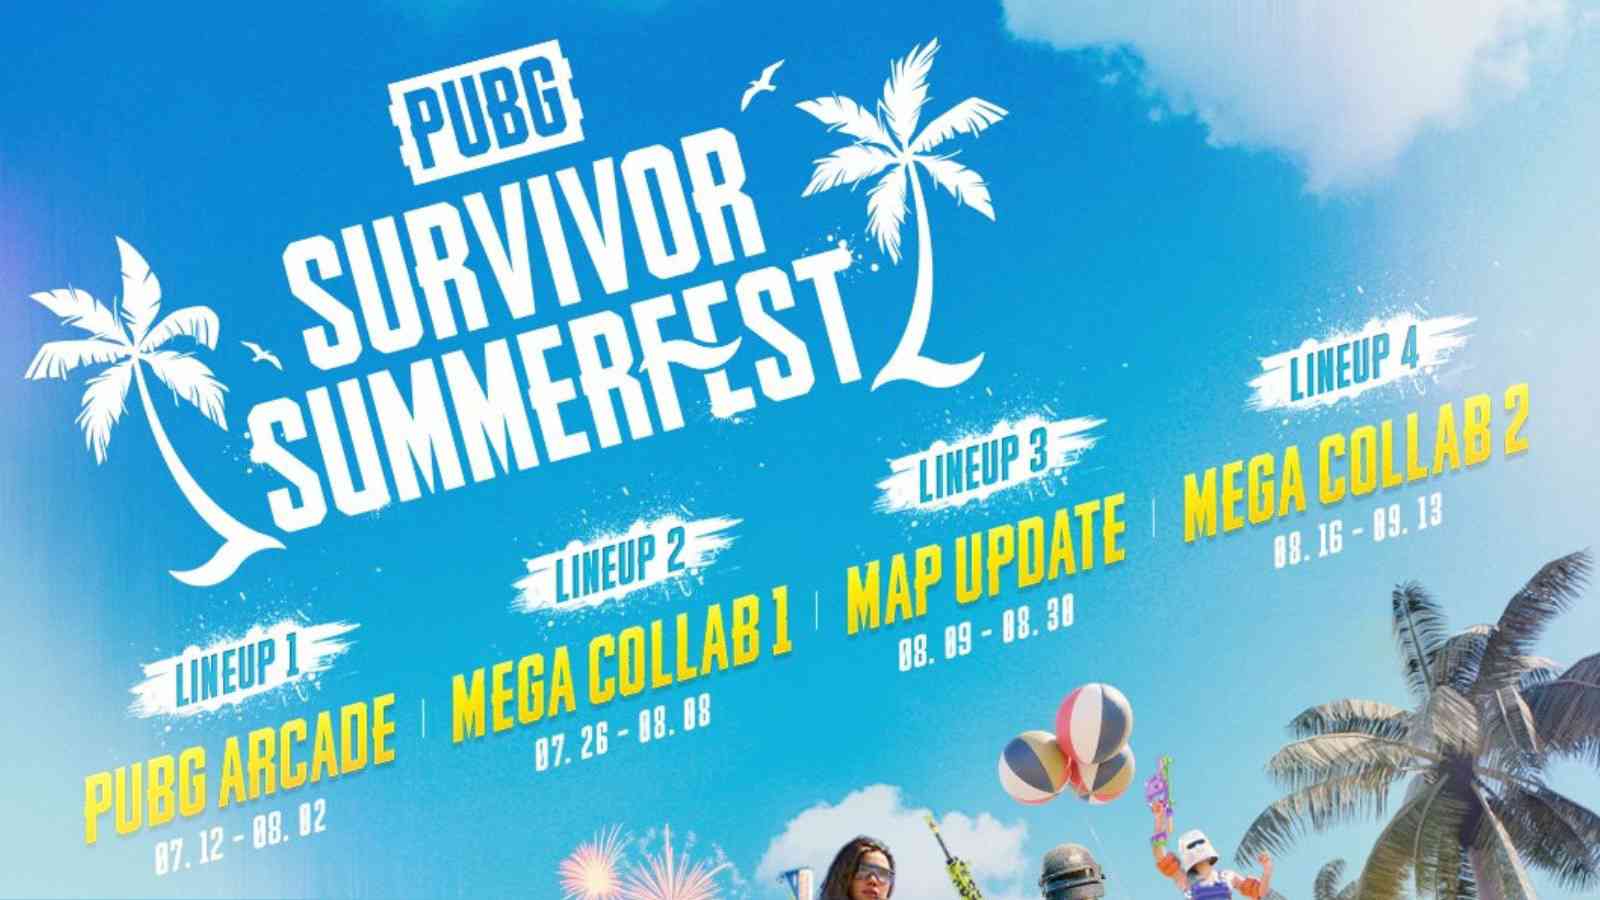 PUBG Survivor Summerfest Event Has Arrived With Mega Lineup